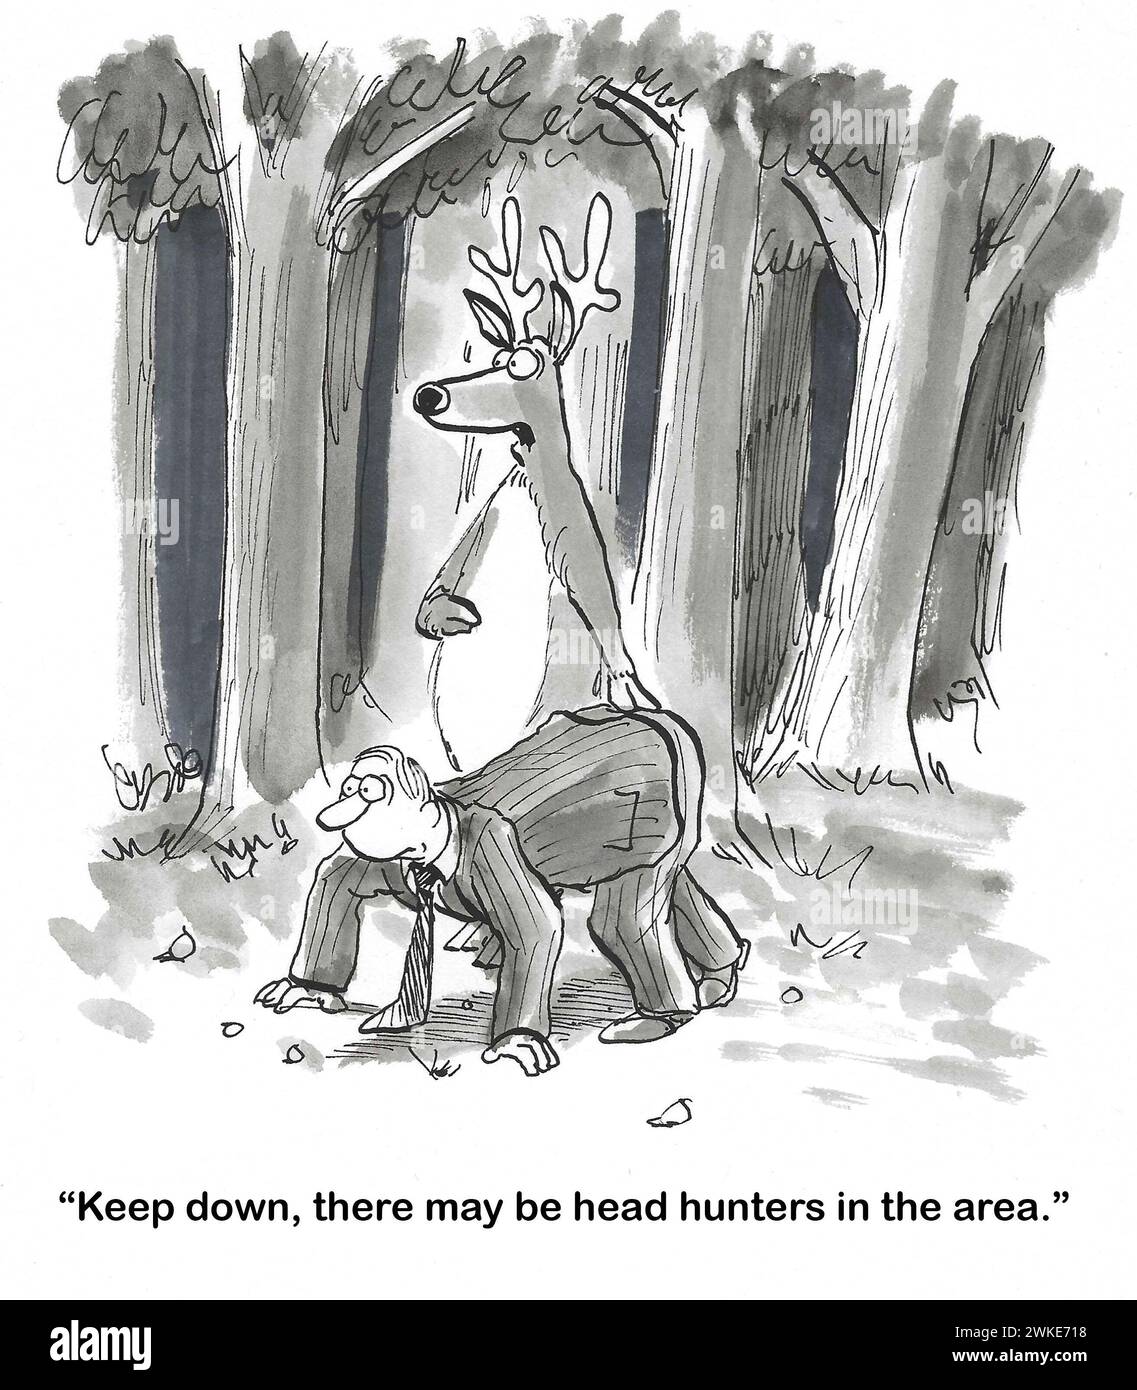 Bande dessinée BW d'un cerf conseillant à un homme mâle de s'accroupir, les chasseurs de tête peuvent être dans la région. Banque D'Images